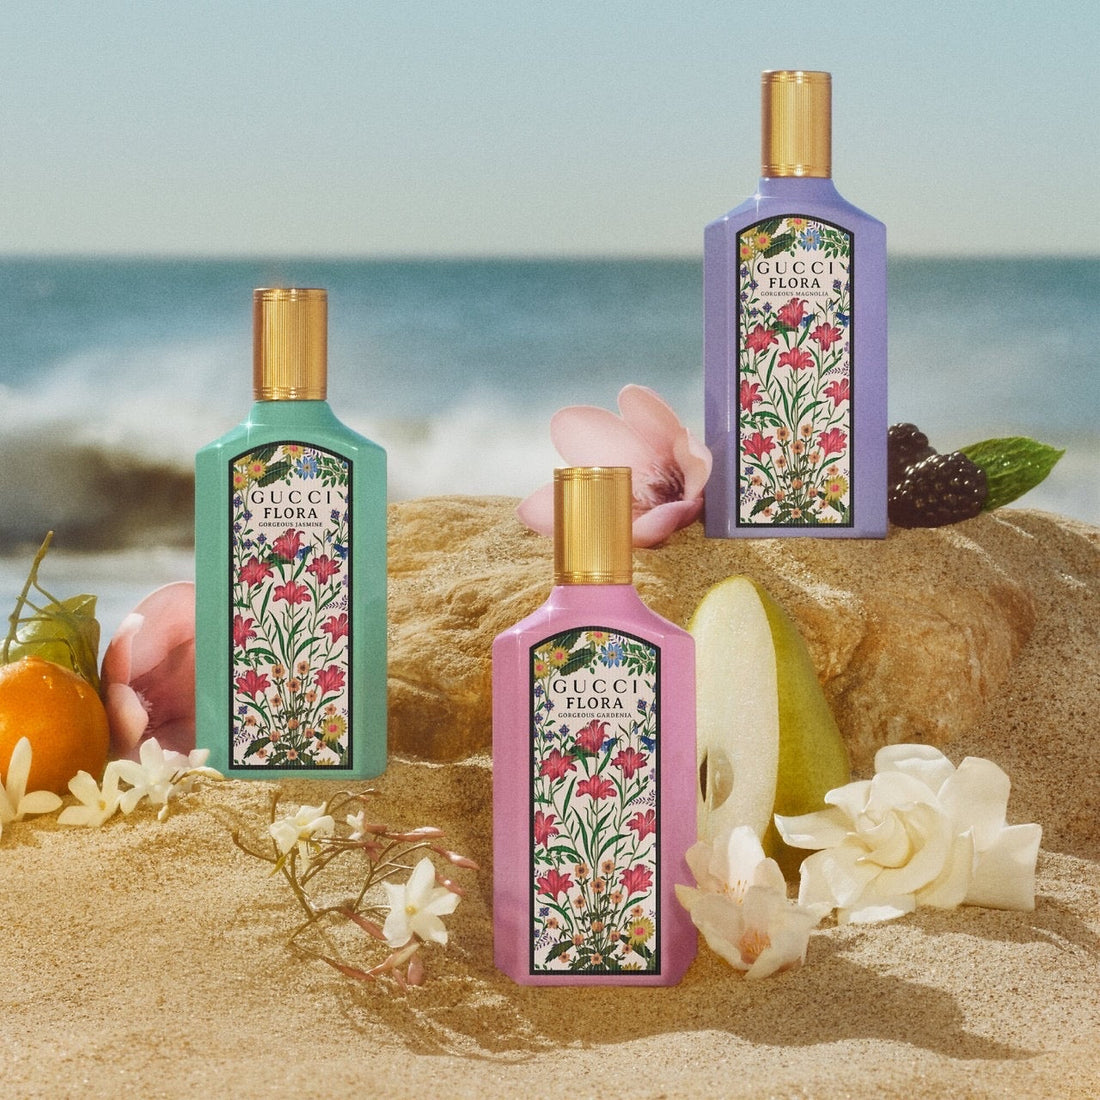 Flora Gorgeous Eau de Parfum Perfume Set/ Gucci